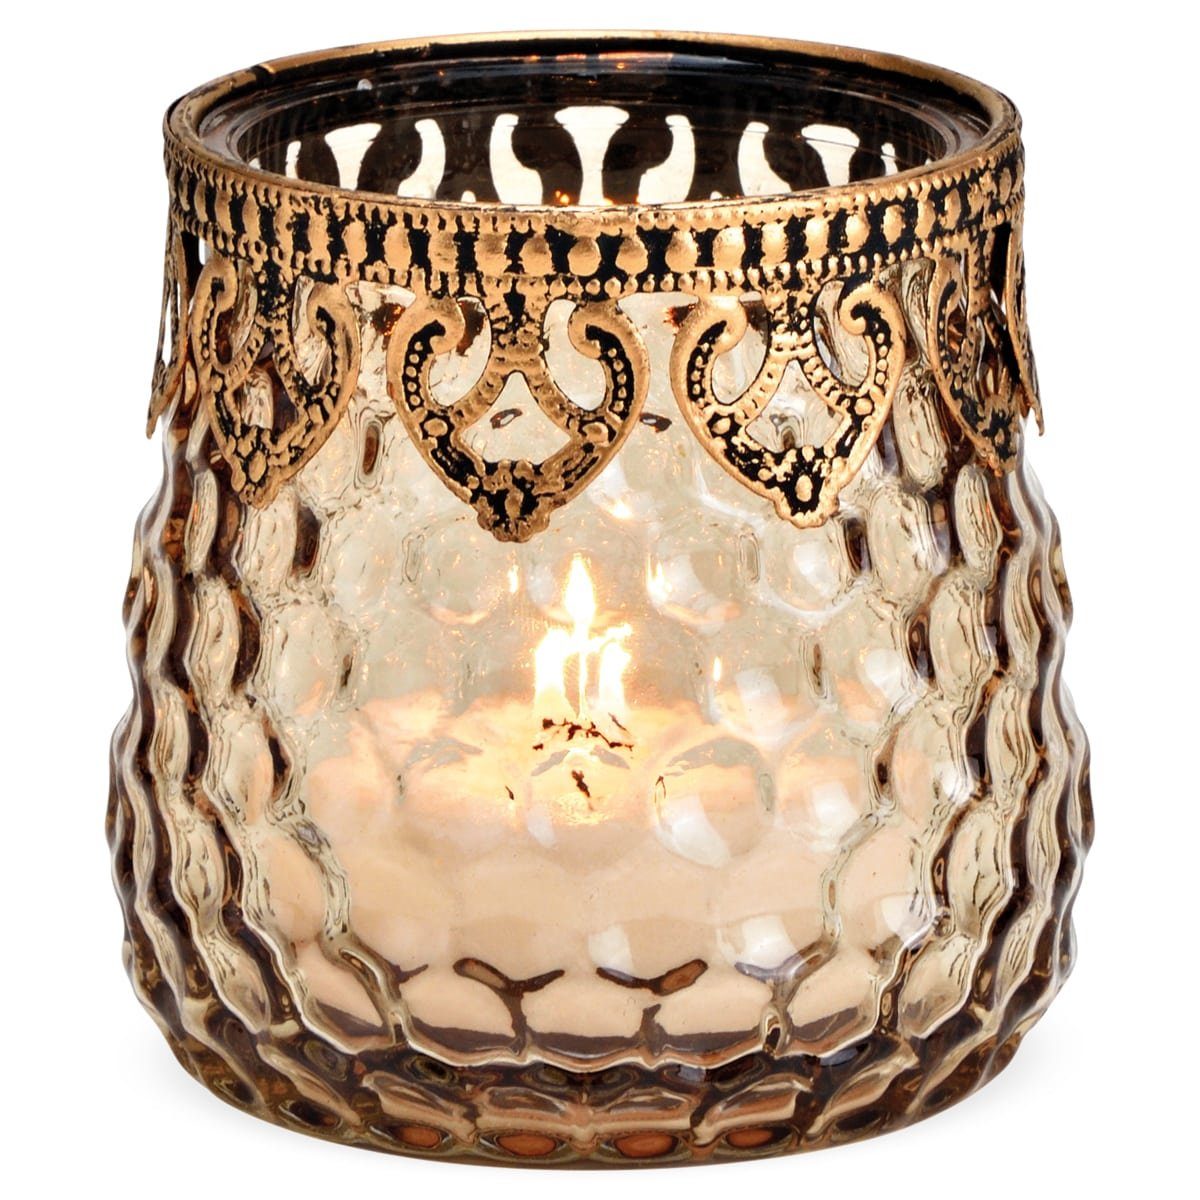 ø & Dekor Glas Windlicht aus in matches21 HOBBY mit Kerzenständer in Metall HOME braun 9x9 cm